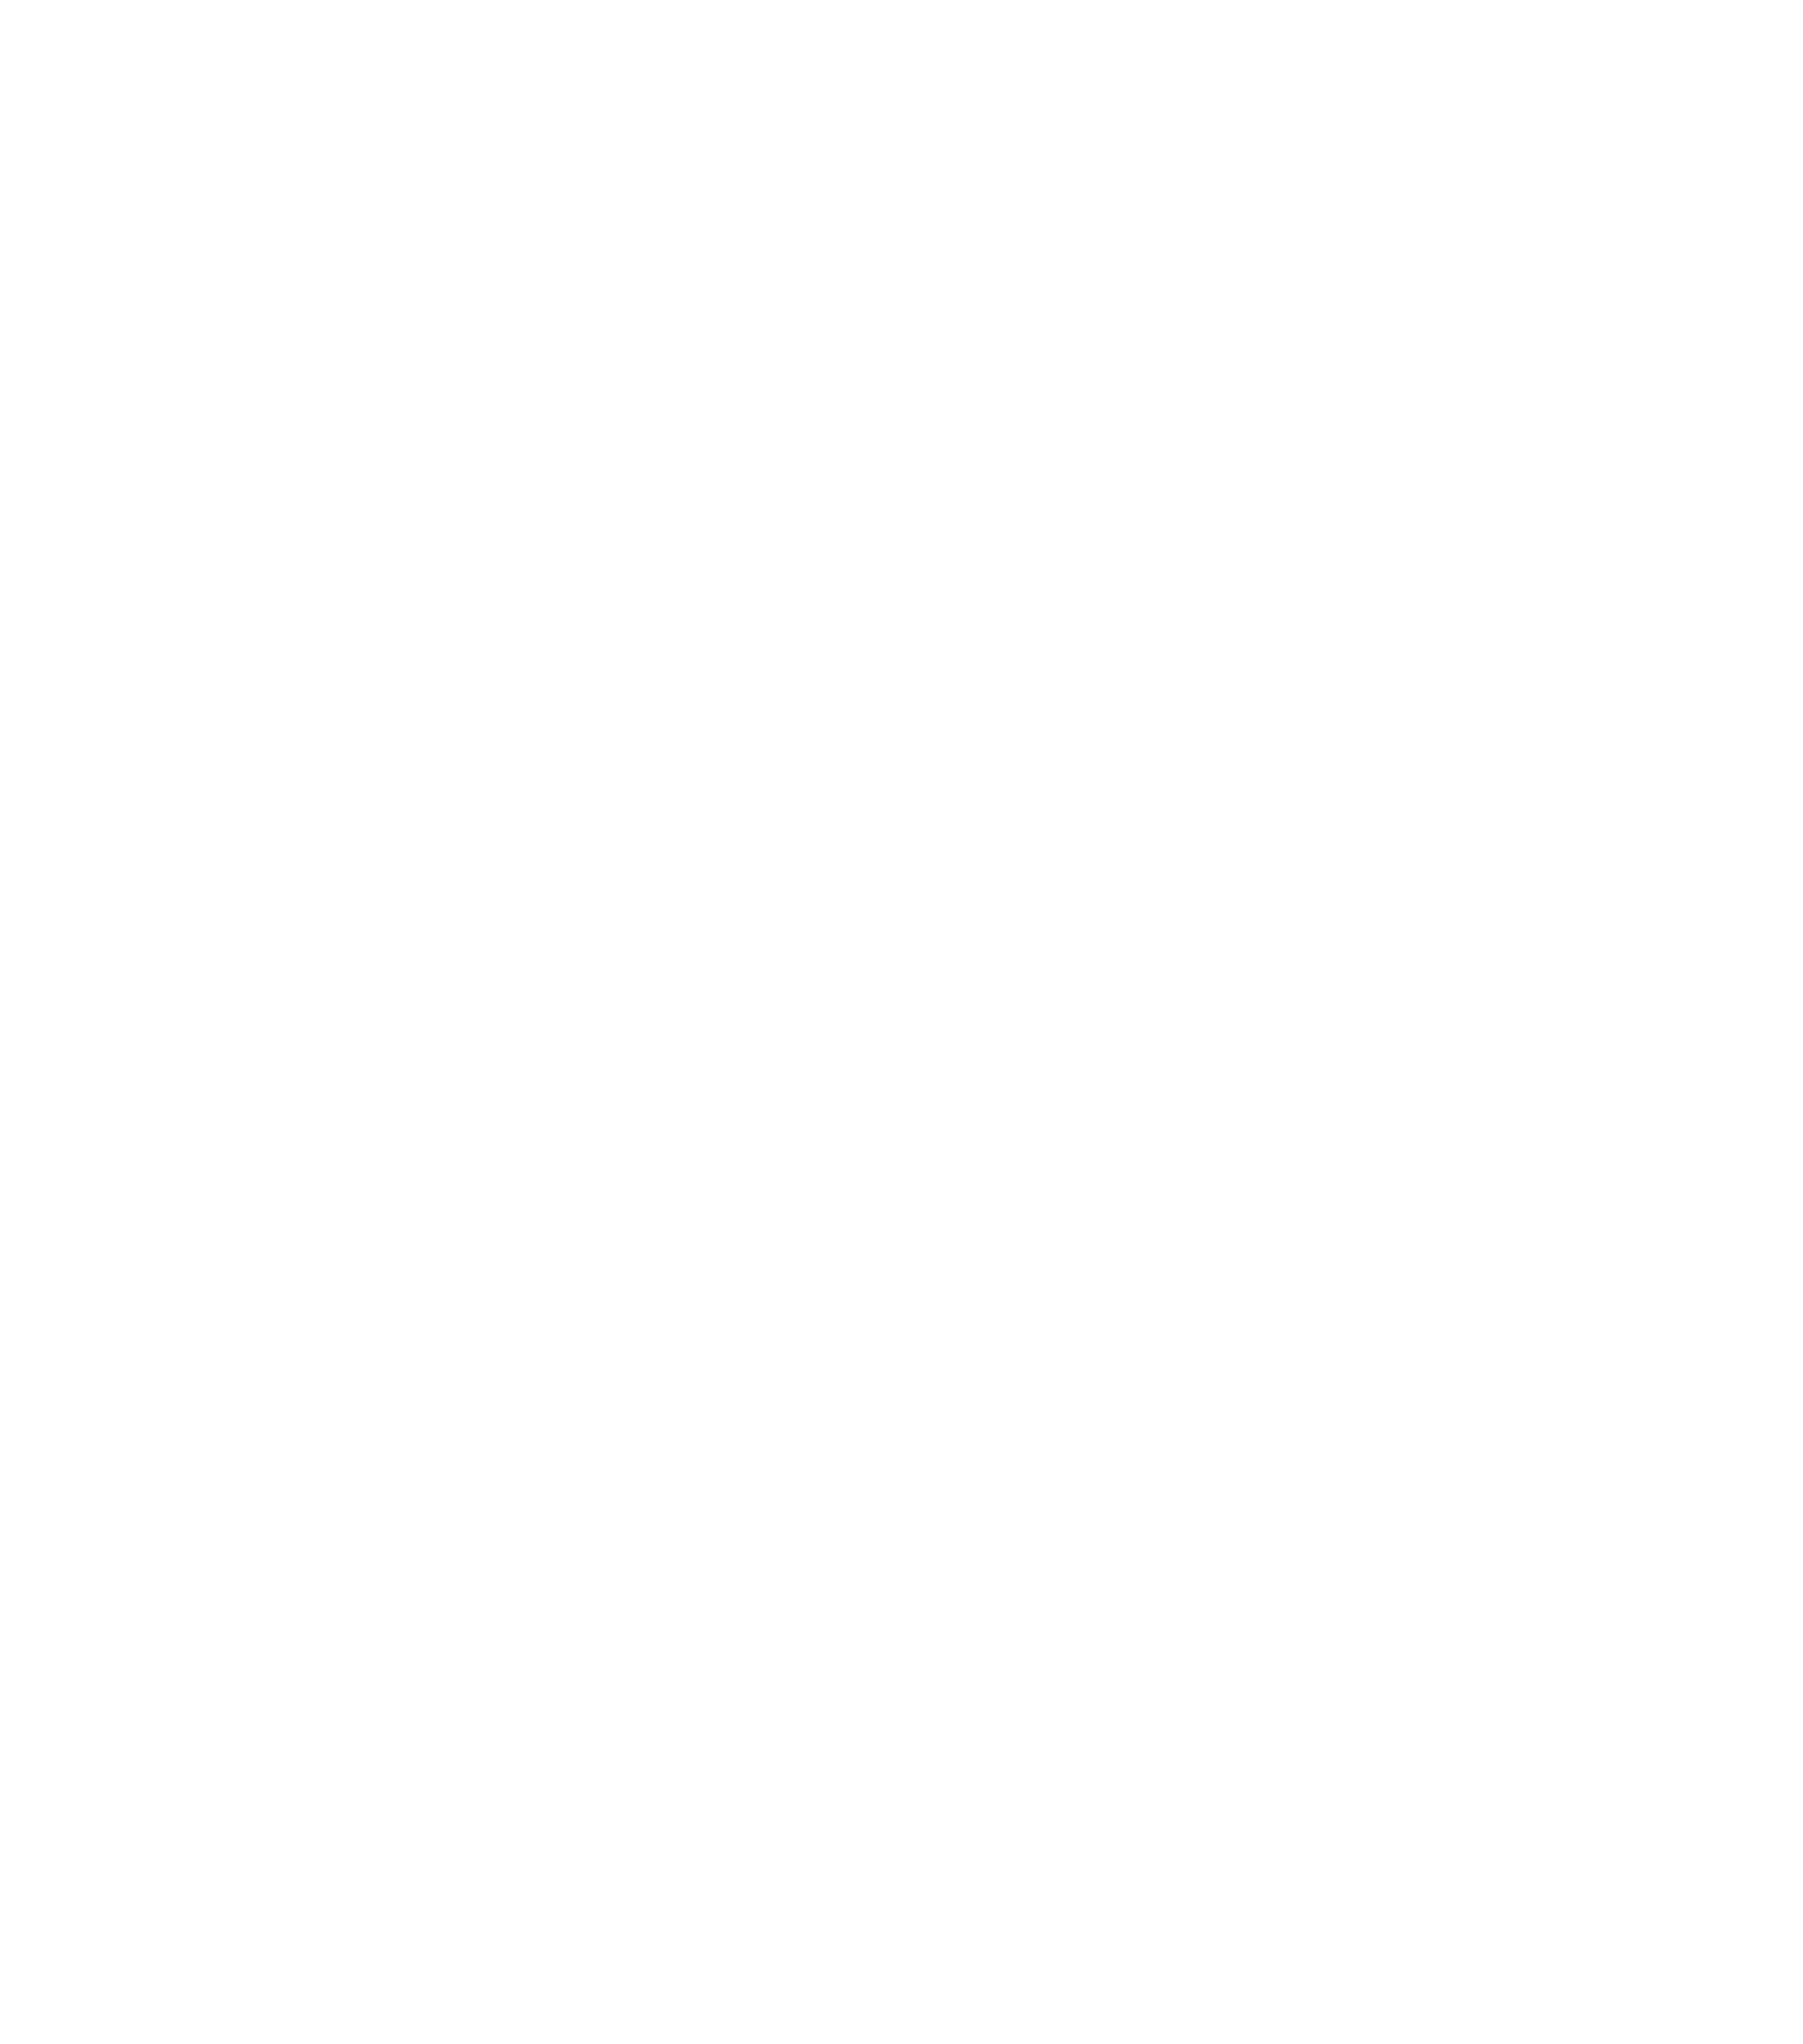 Sespe Power Solutions